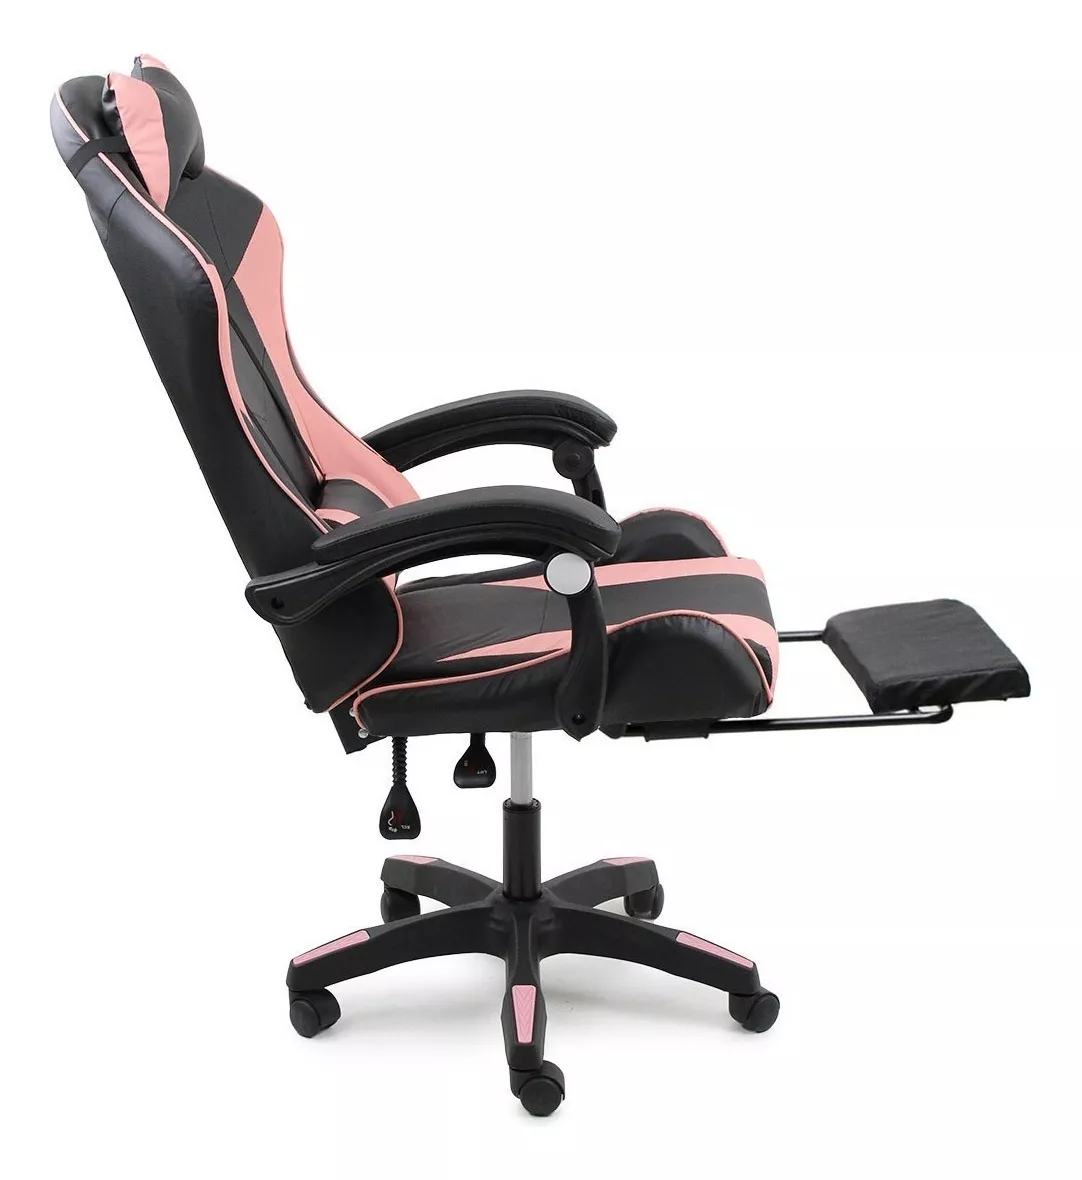 Terceira imagem para pesquisa de cadeira gamer rosa